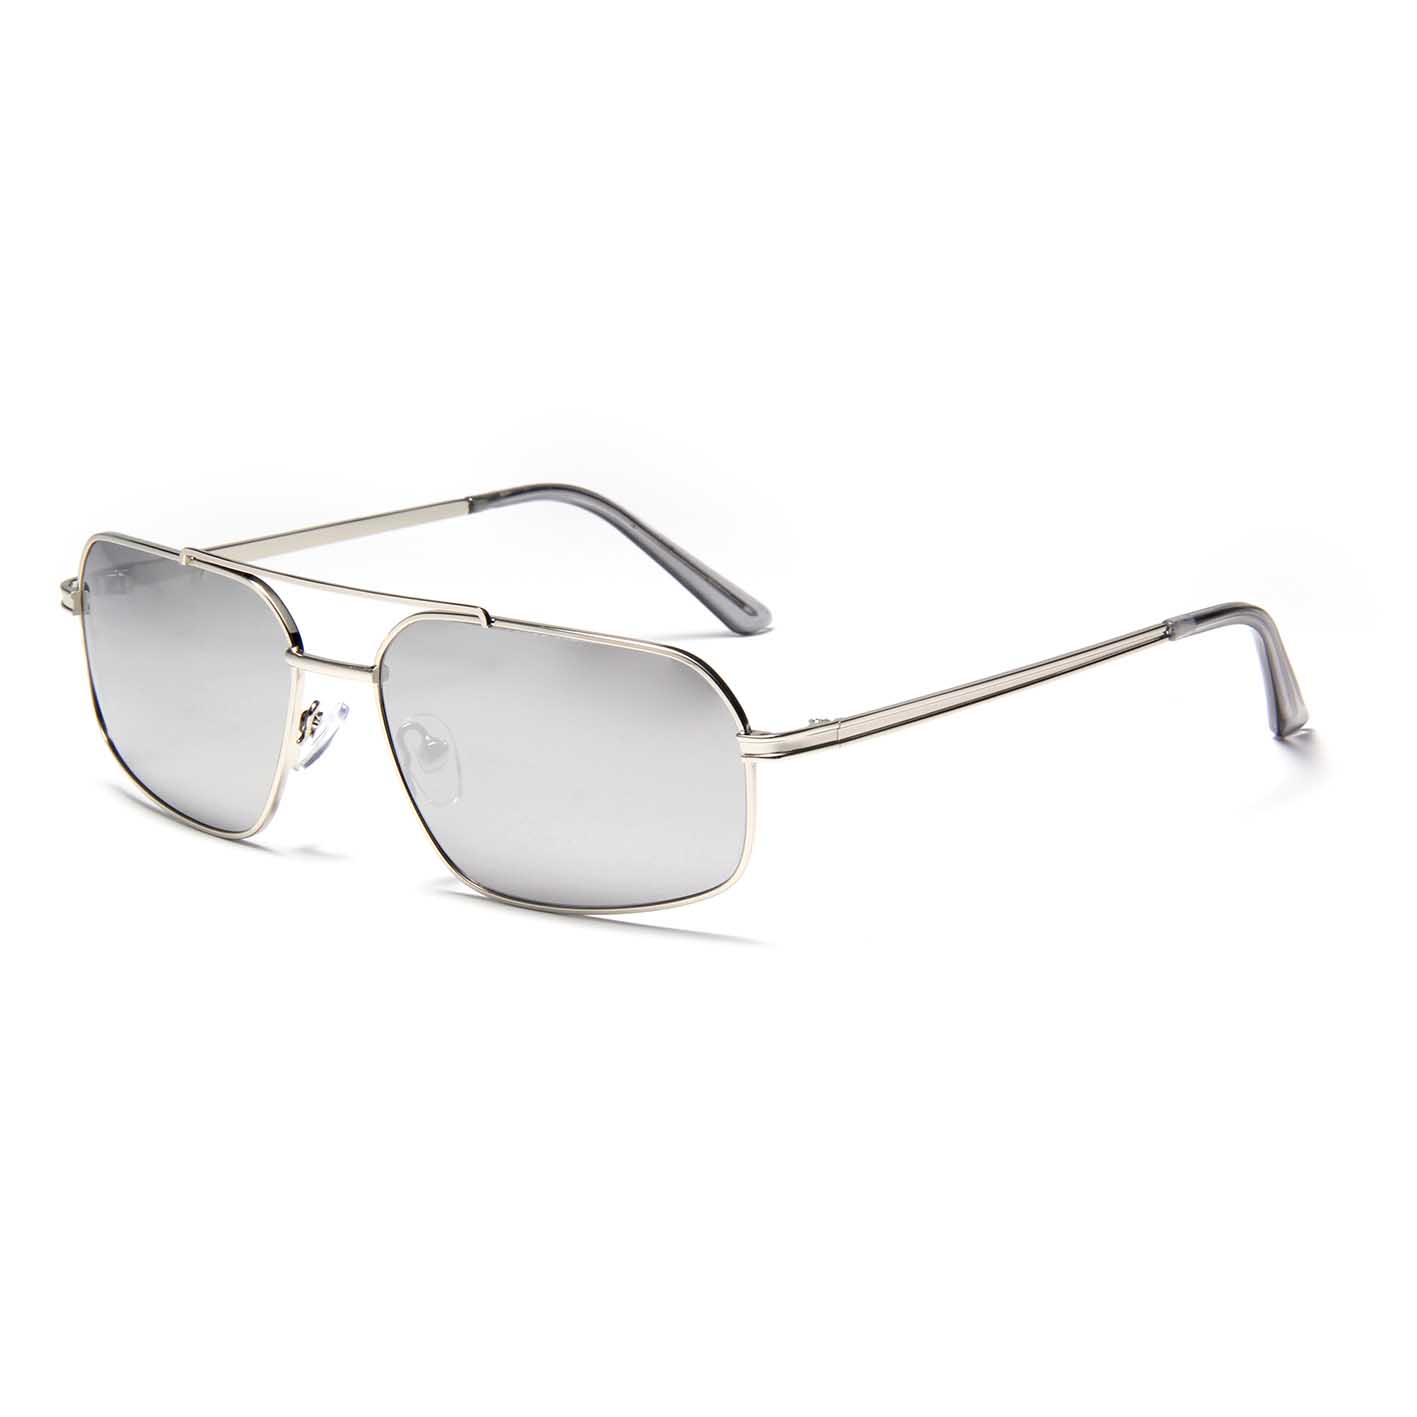 YJ325 Lentes De Sol Nuevas y elegantes gafas de sol de metal para hombre, gafas de sol hechas a medida, lentes polarizadas, gafas de sol estrechas piloto de doble puente